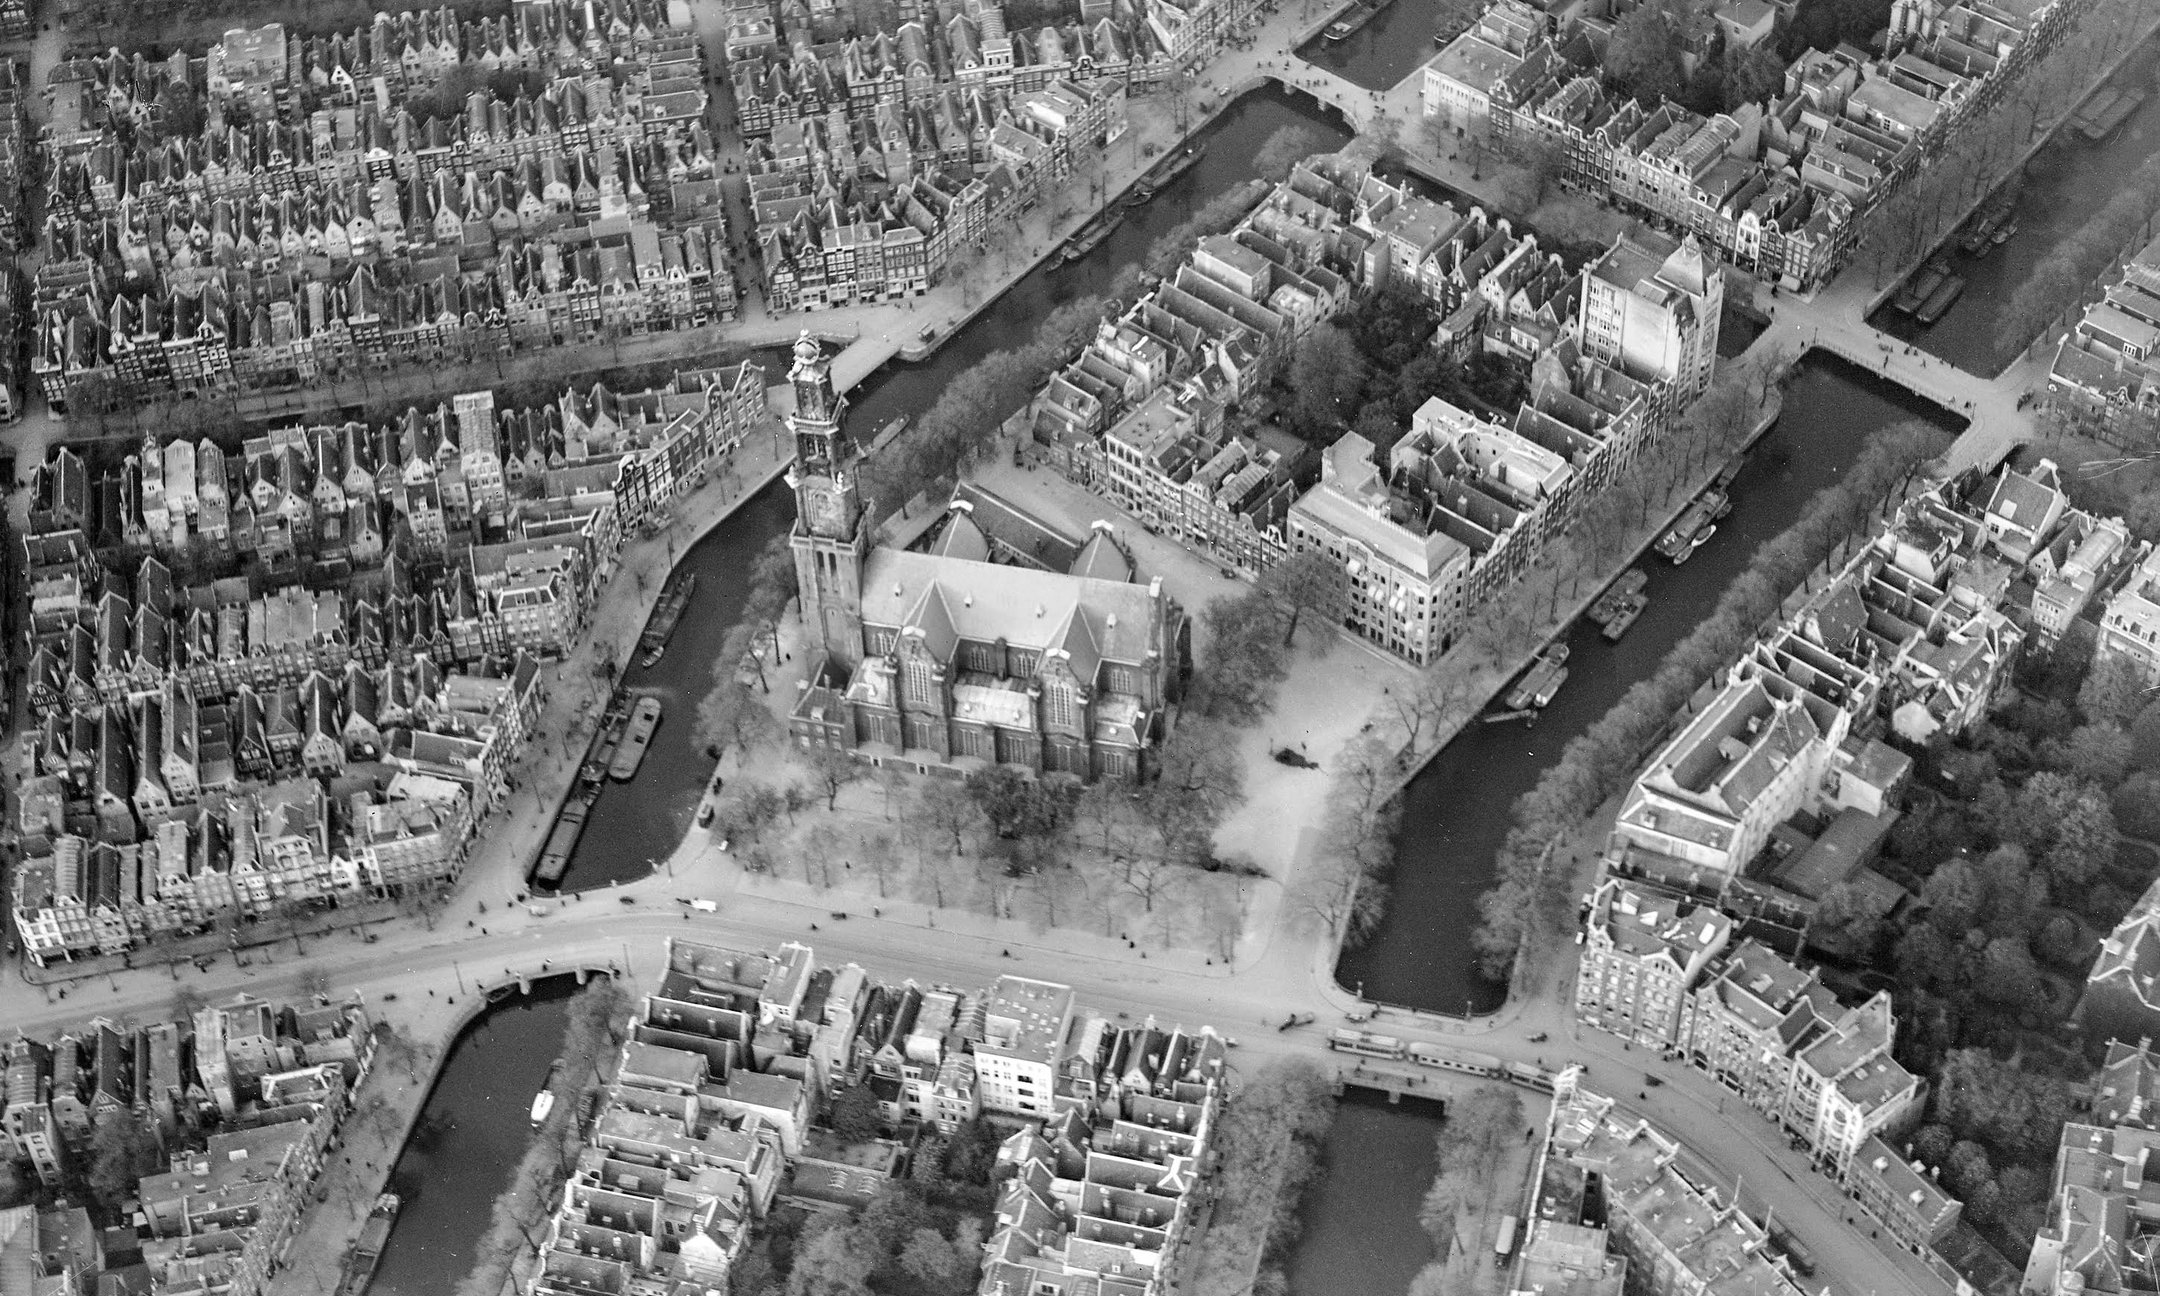 Luchtfoto van Amsterdam. In het midden staat de Westerkerk. Het pand Prinsengracht 263 ligt in het blok boven de toren, aan het water.